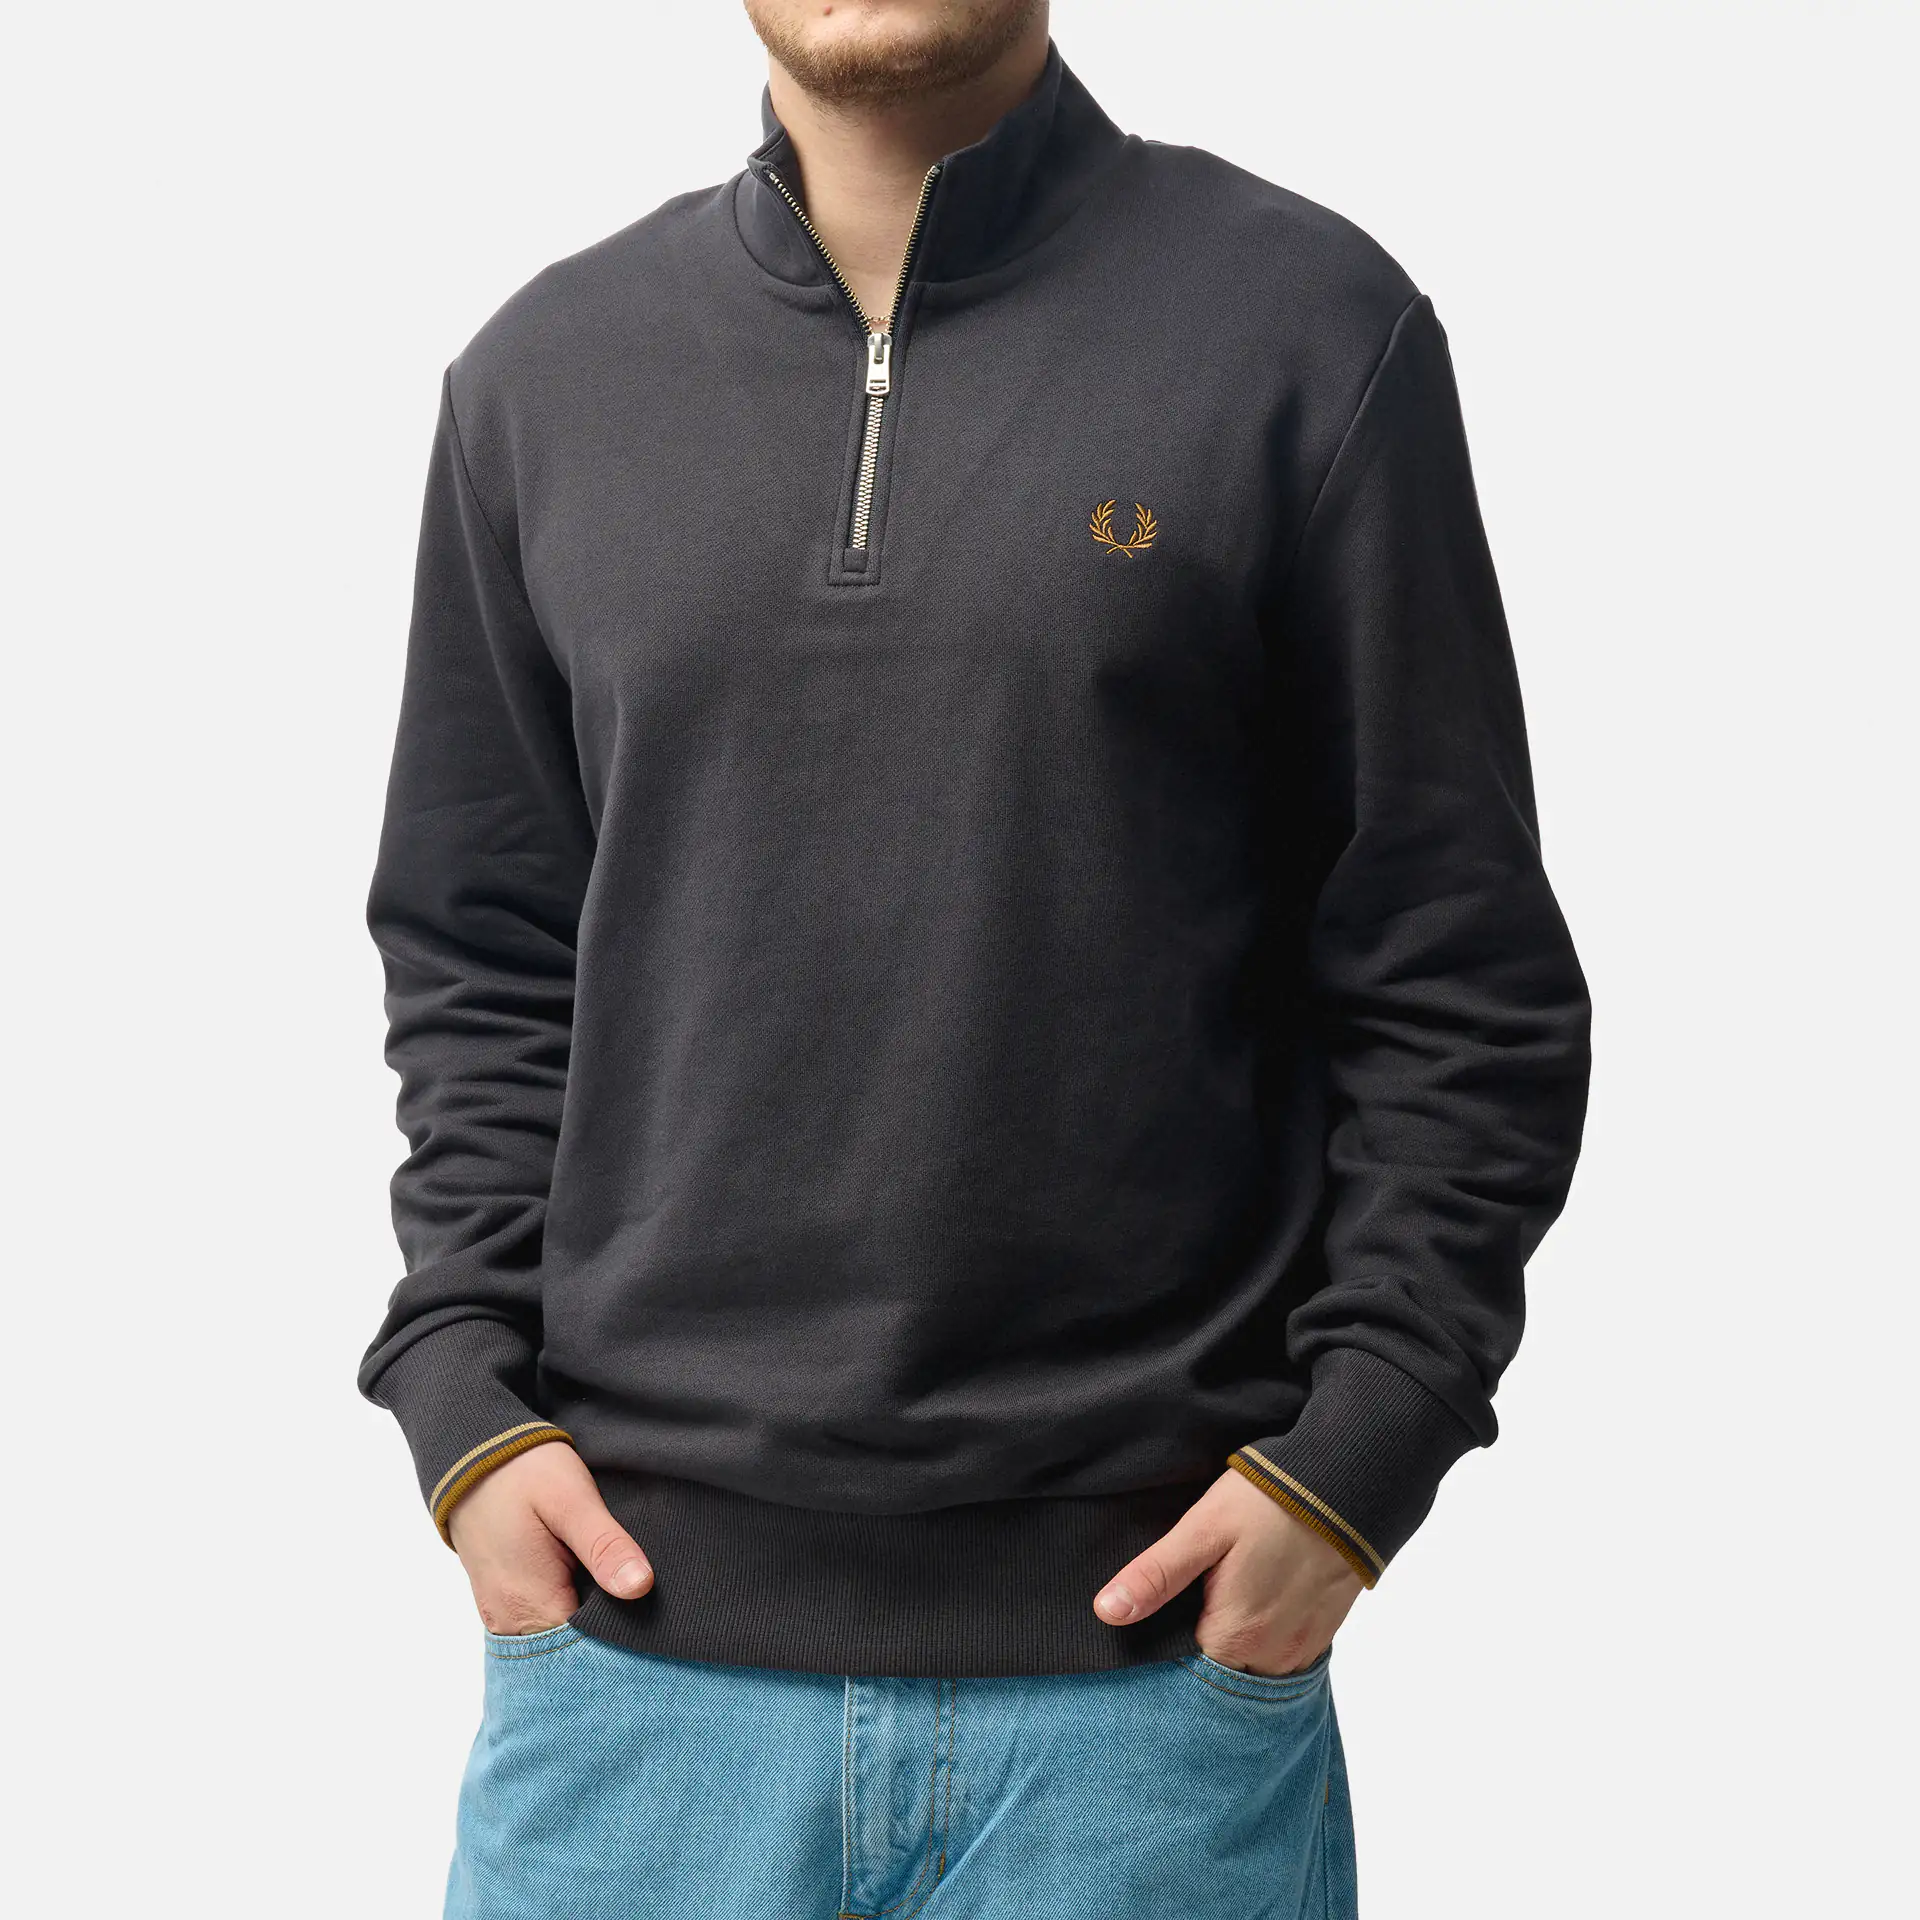 Pullover für Männer online FORWARD kaufen bei ✧ FAST